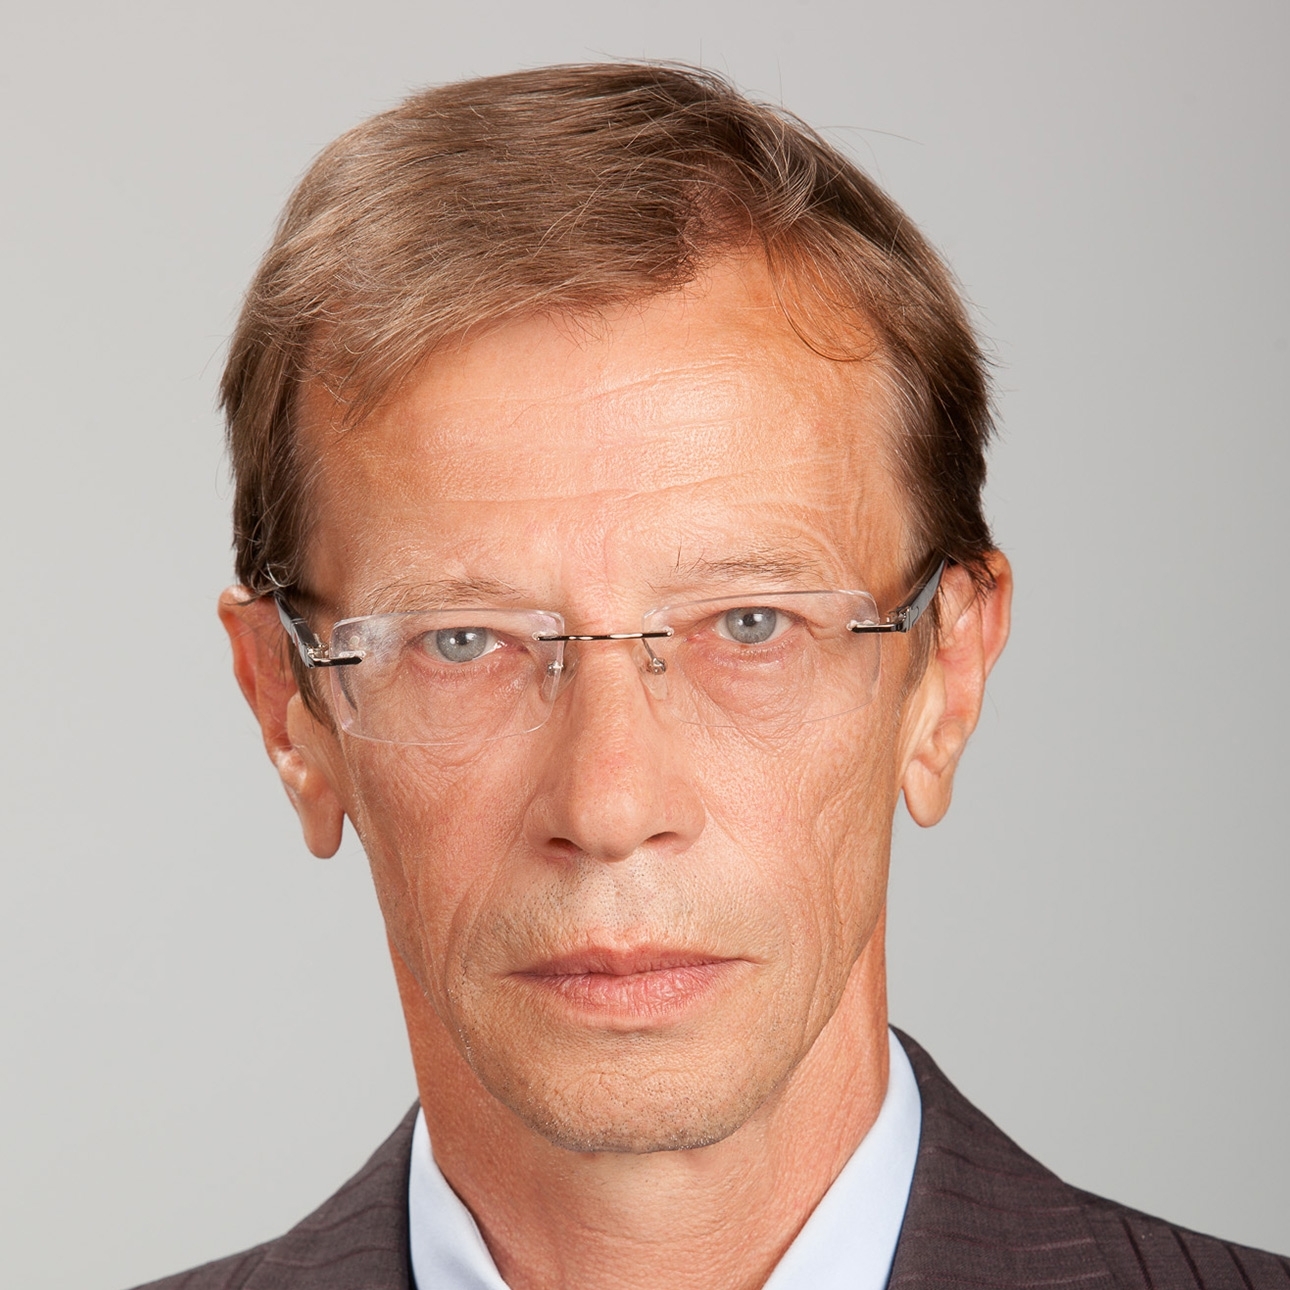 Vitaly Leonidovich Okulov